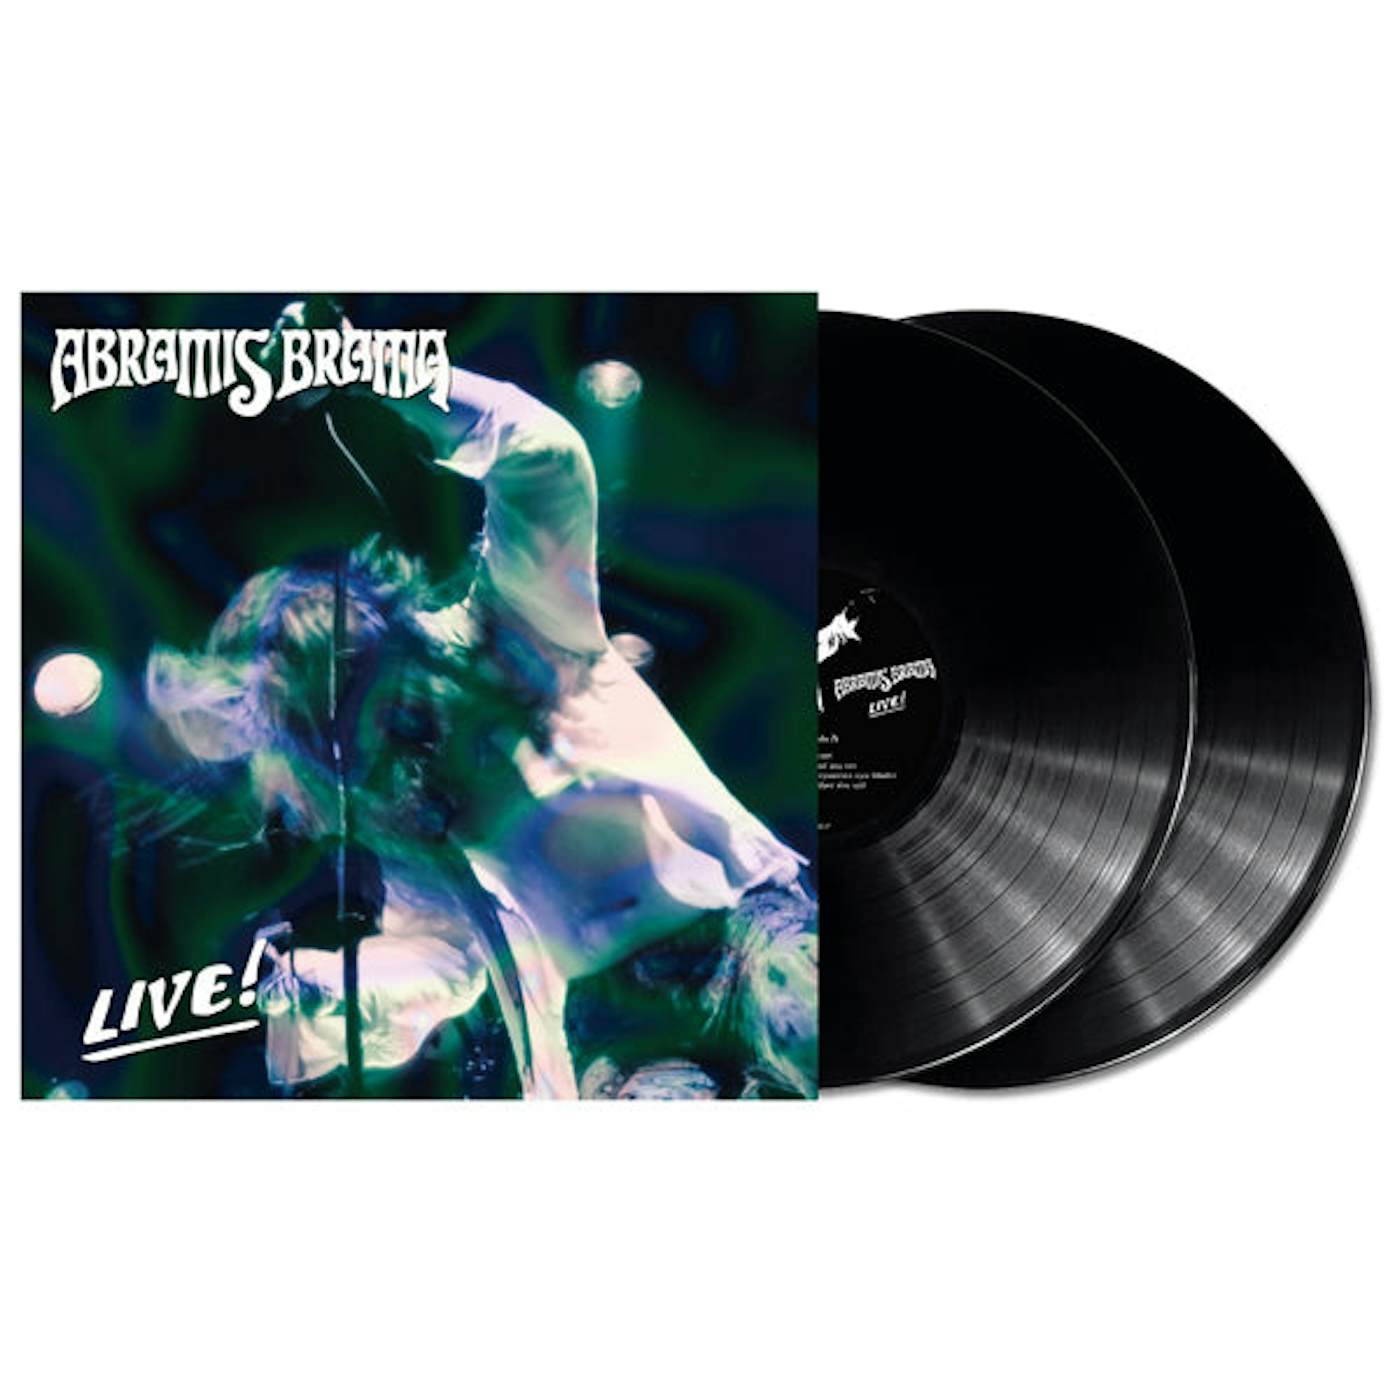 Abramis Brama LP - Live! (Vinyl)